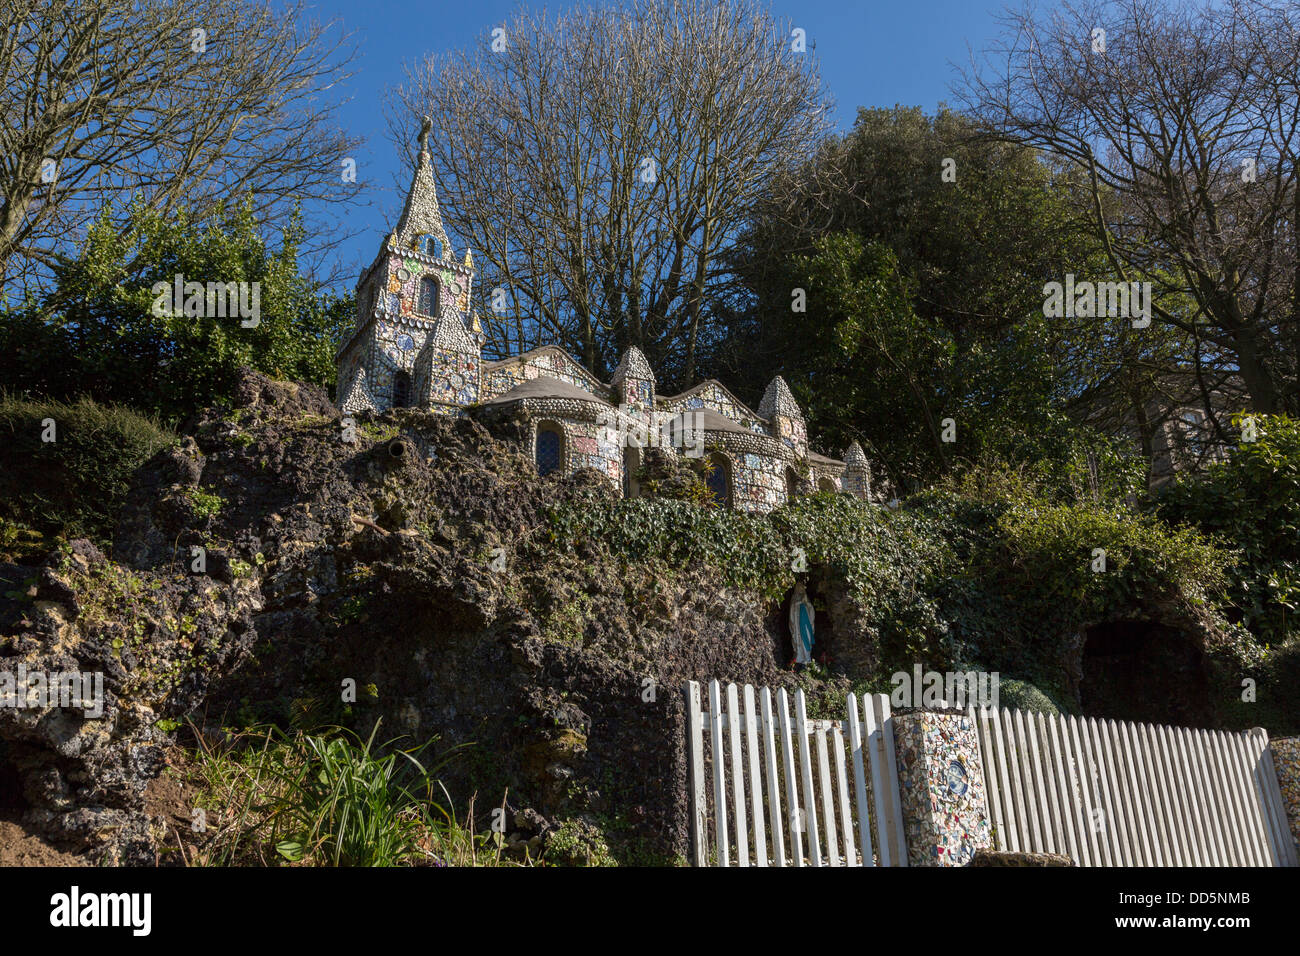 Guernsey 2013. La petite chapelle ornée de poteries cassées. Banque D'Images